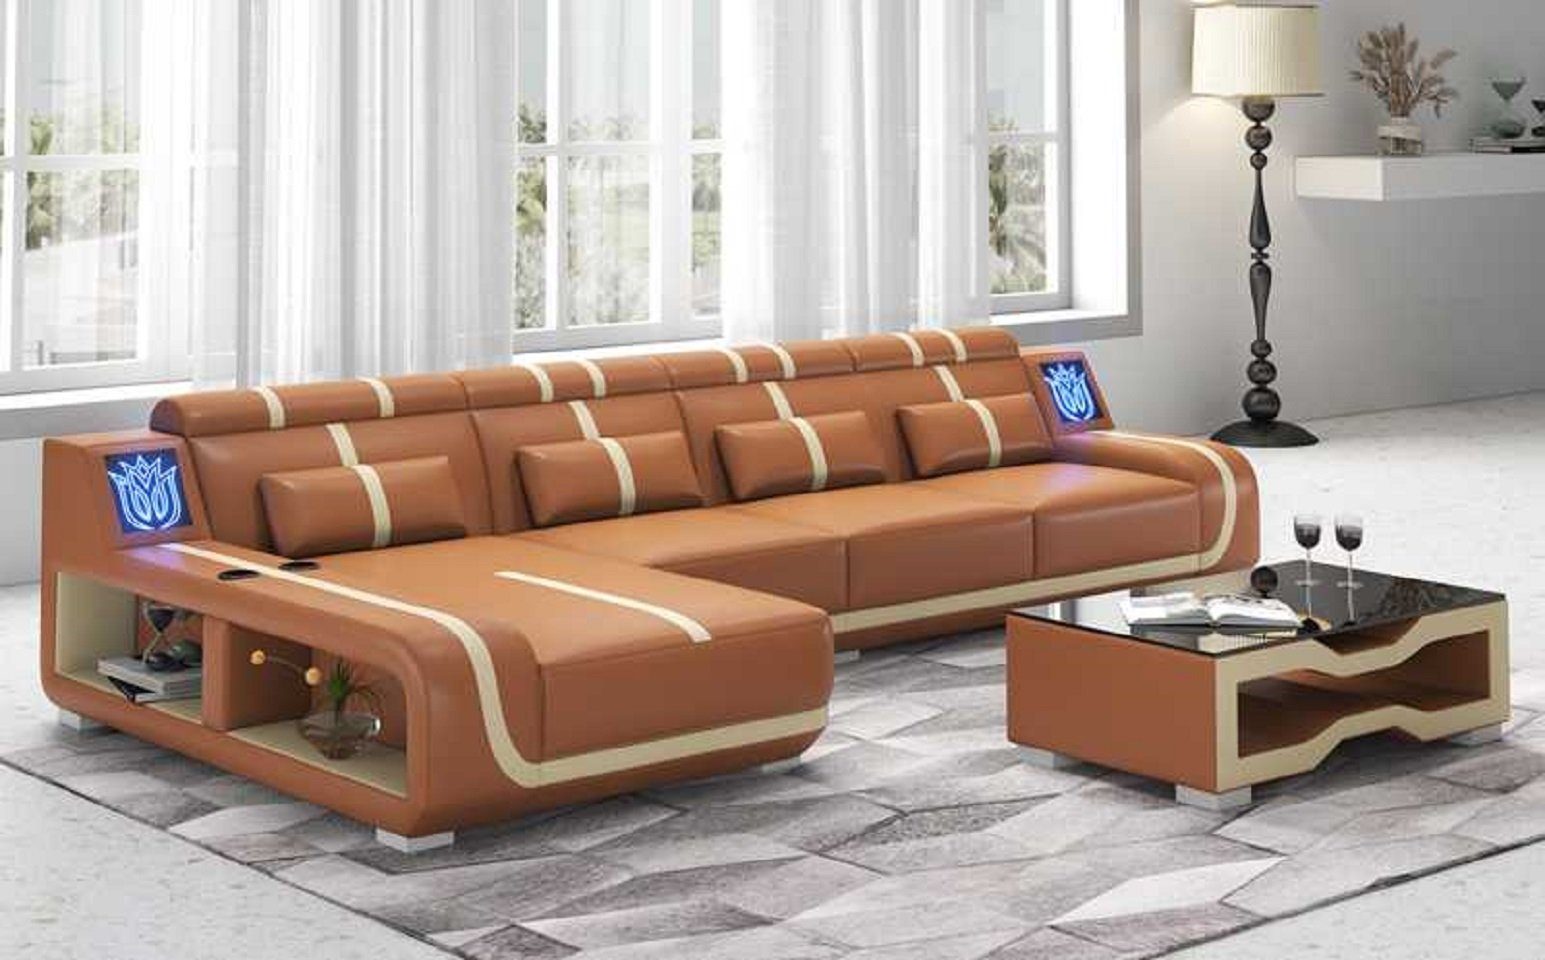 JVmoebel Ecksofa Design Ecksofa Couch L Form Liege Modern Sofa couchen, 3 Teile, Made in Europe Braun